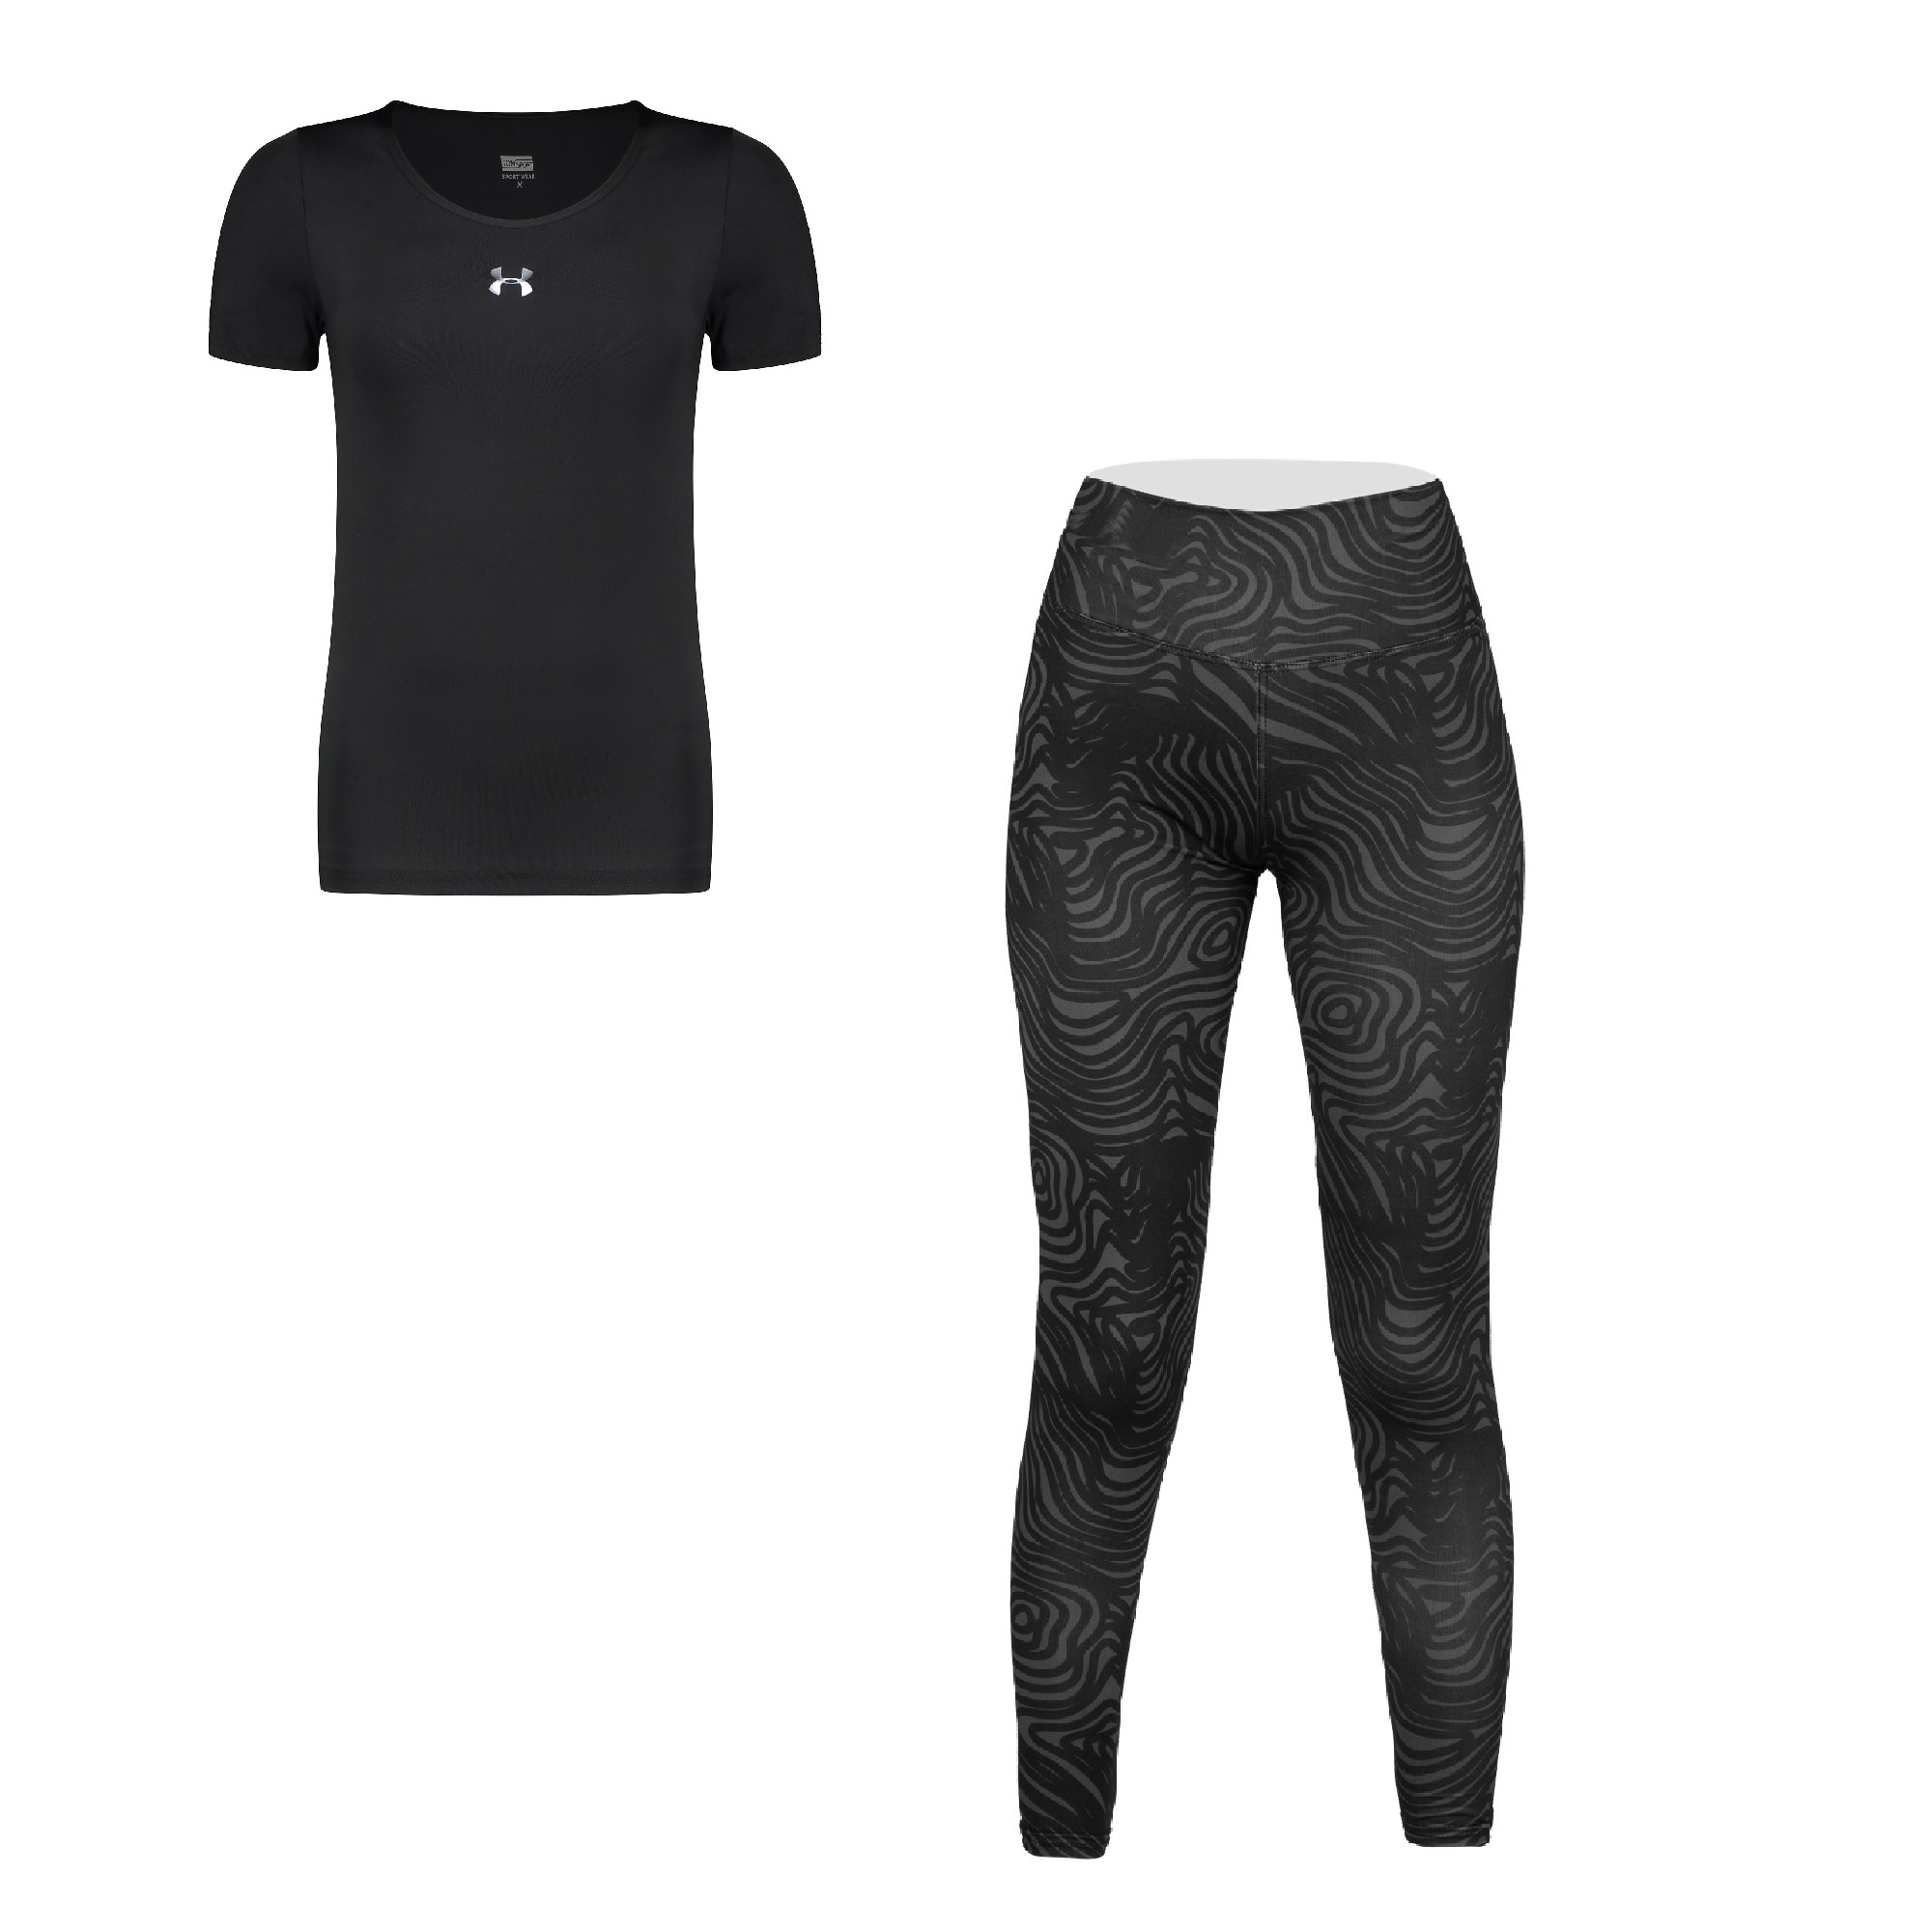 ست تی شرت و شلوار ورزشی زنانه مدل L190106-7101